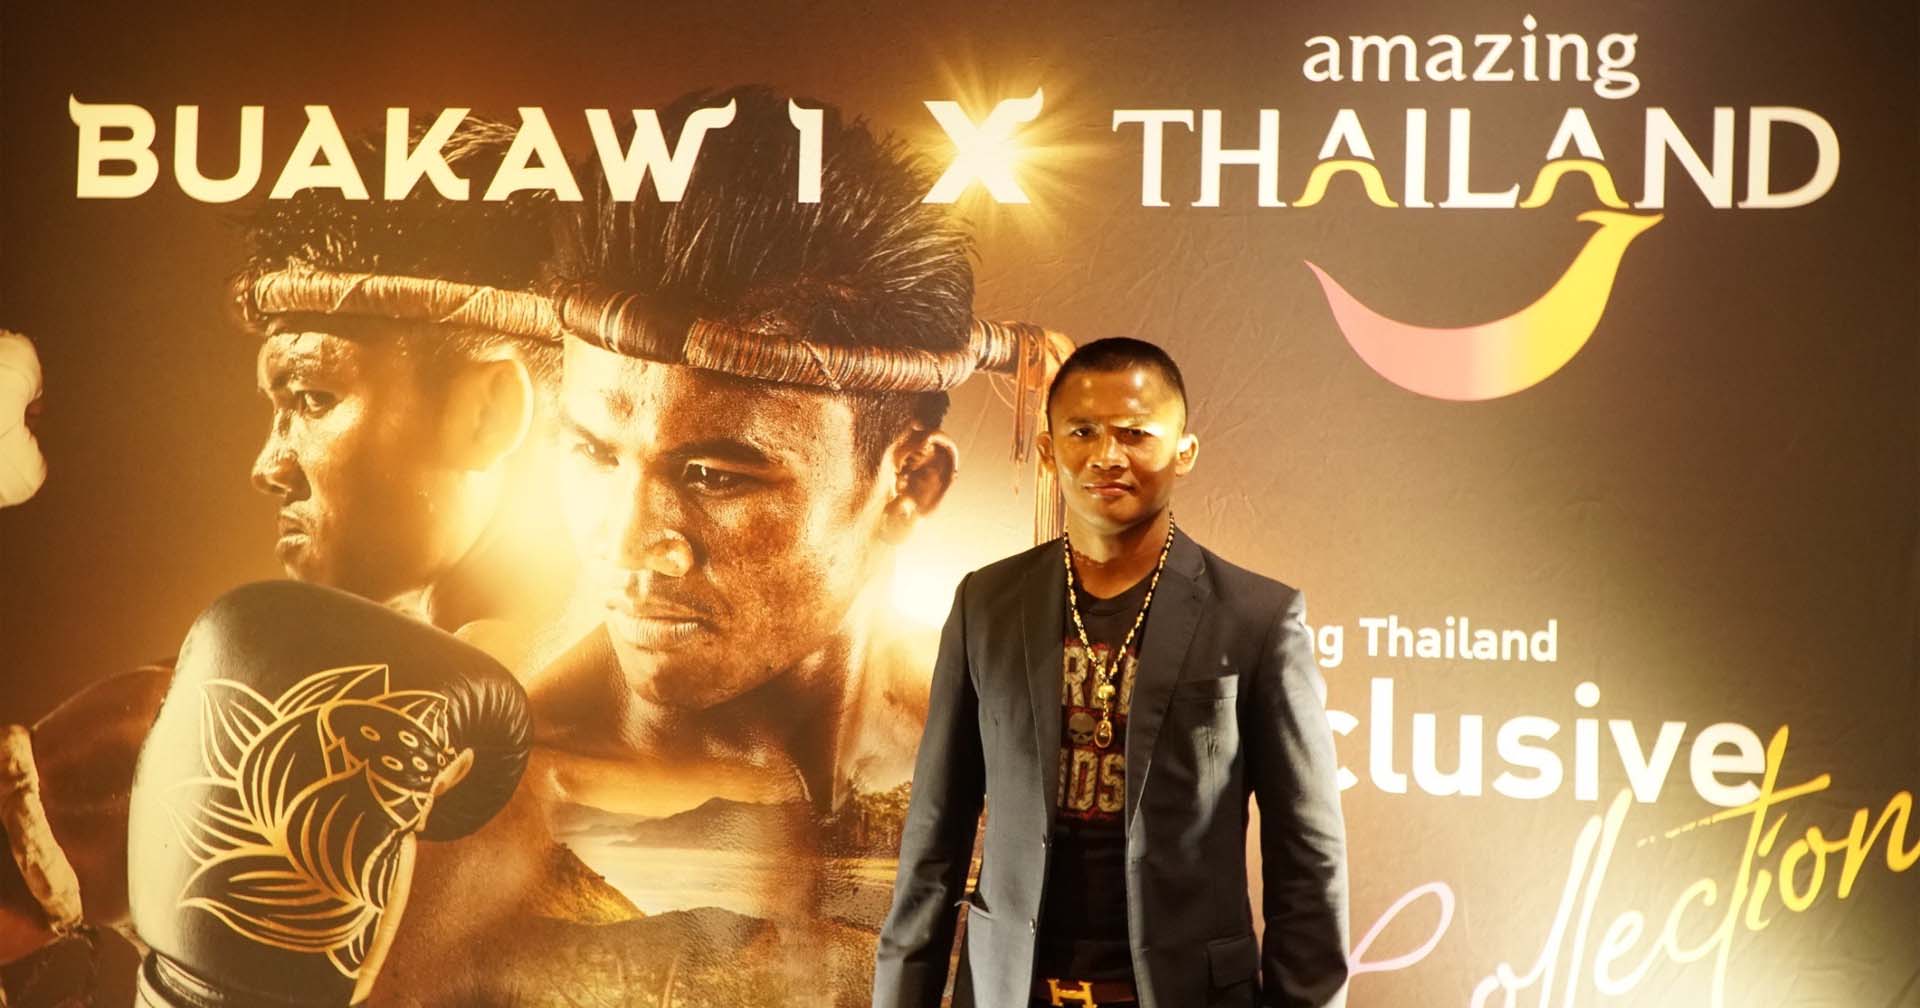 ททท. เปิดตัว NFT BUAKAW 1 x Amazing Thailand ต่อยอดการท่องเที่ยวด้วยเทคโนโลยี